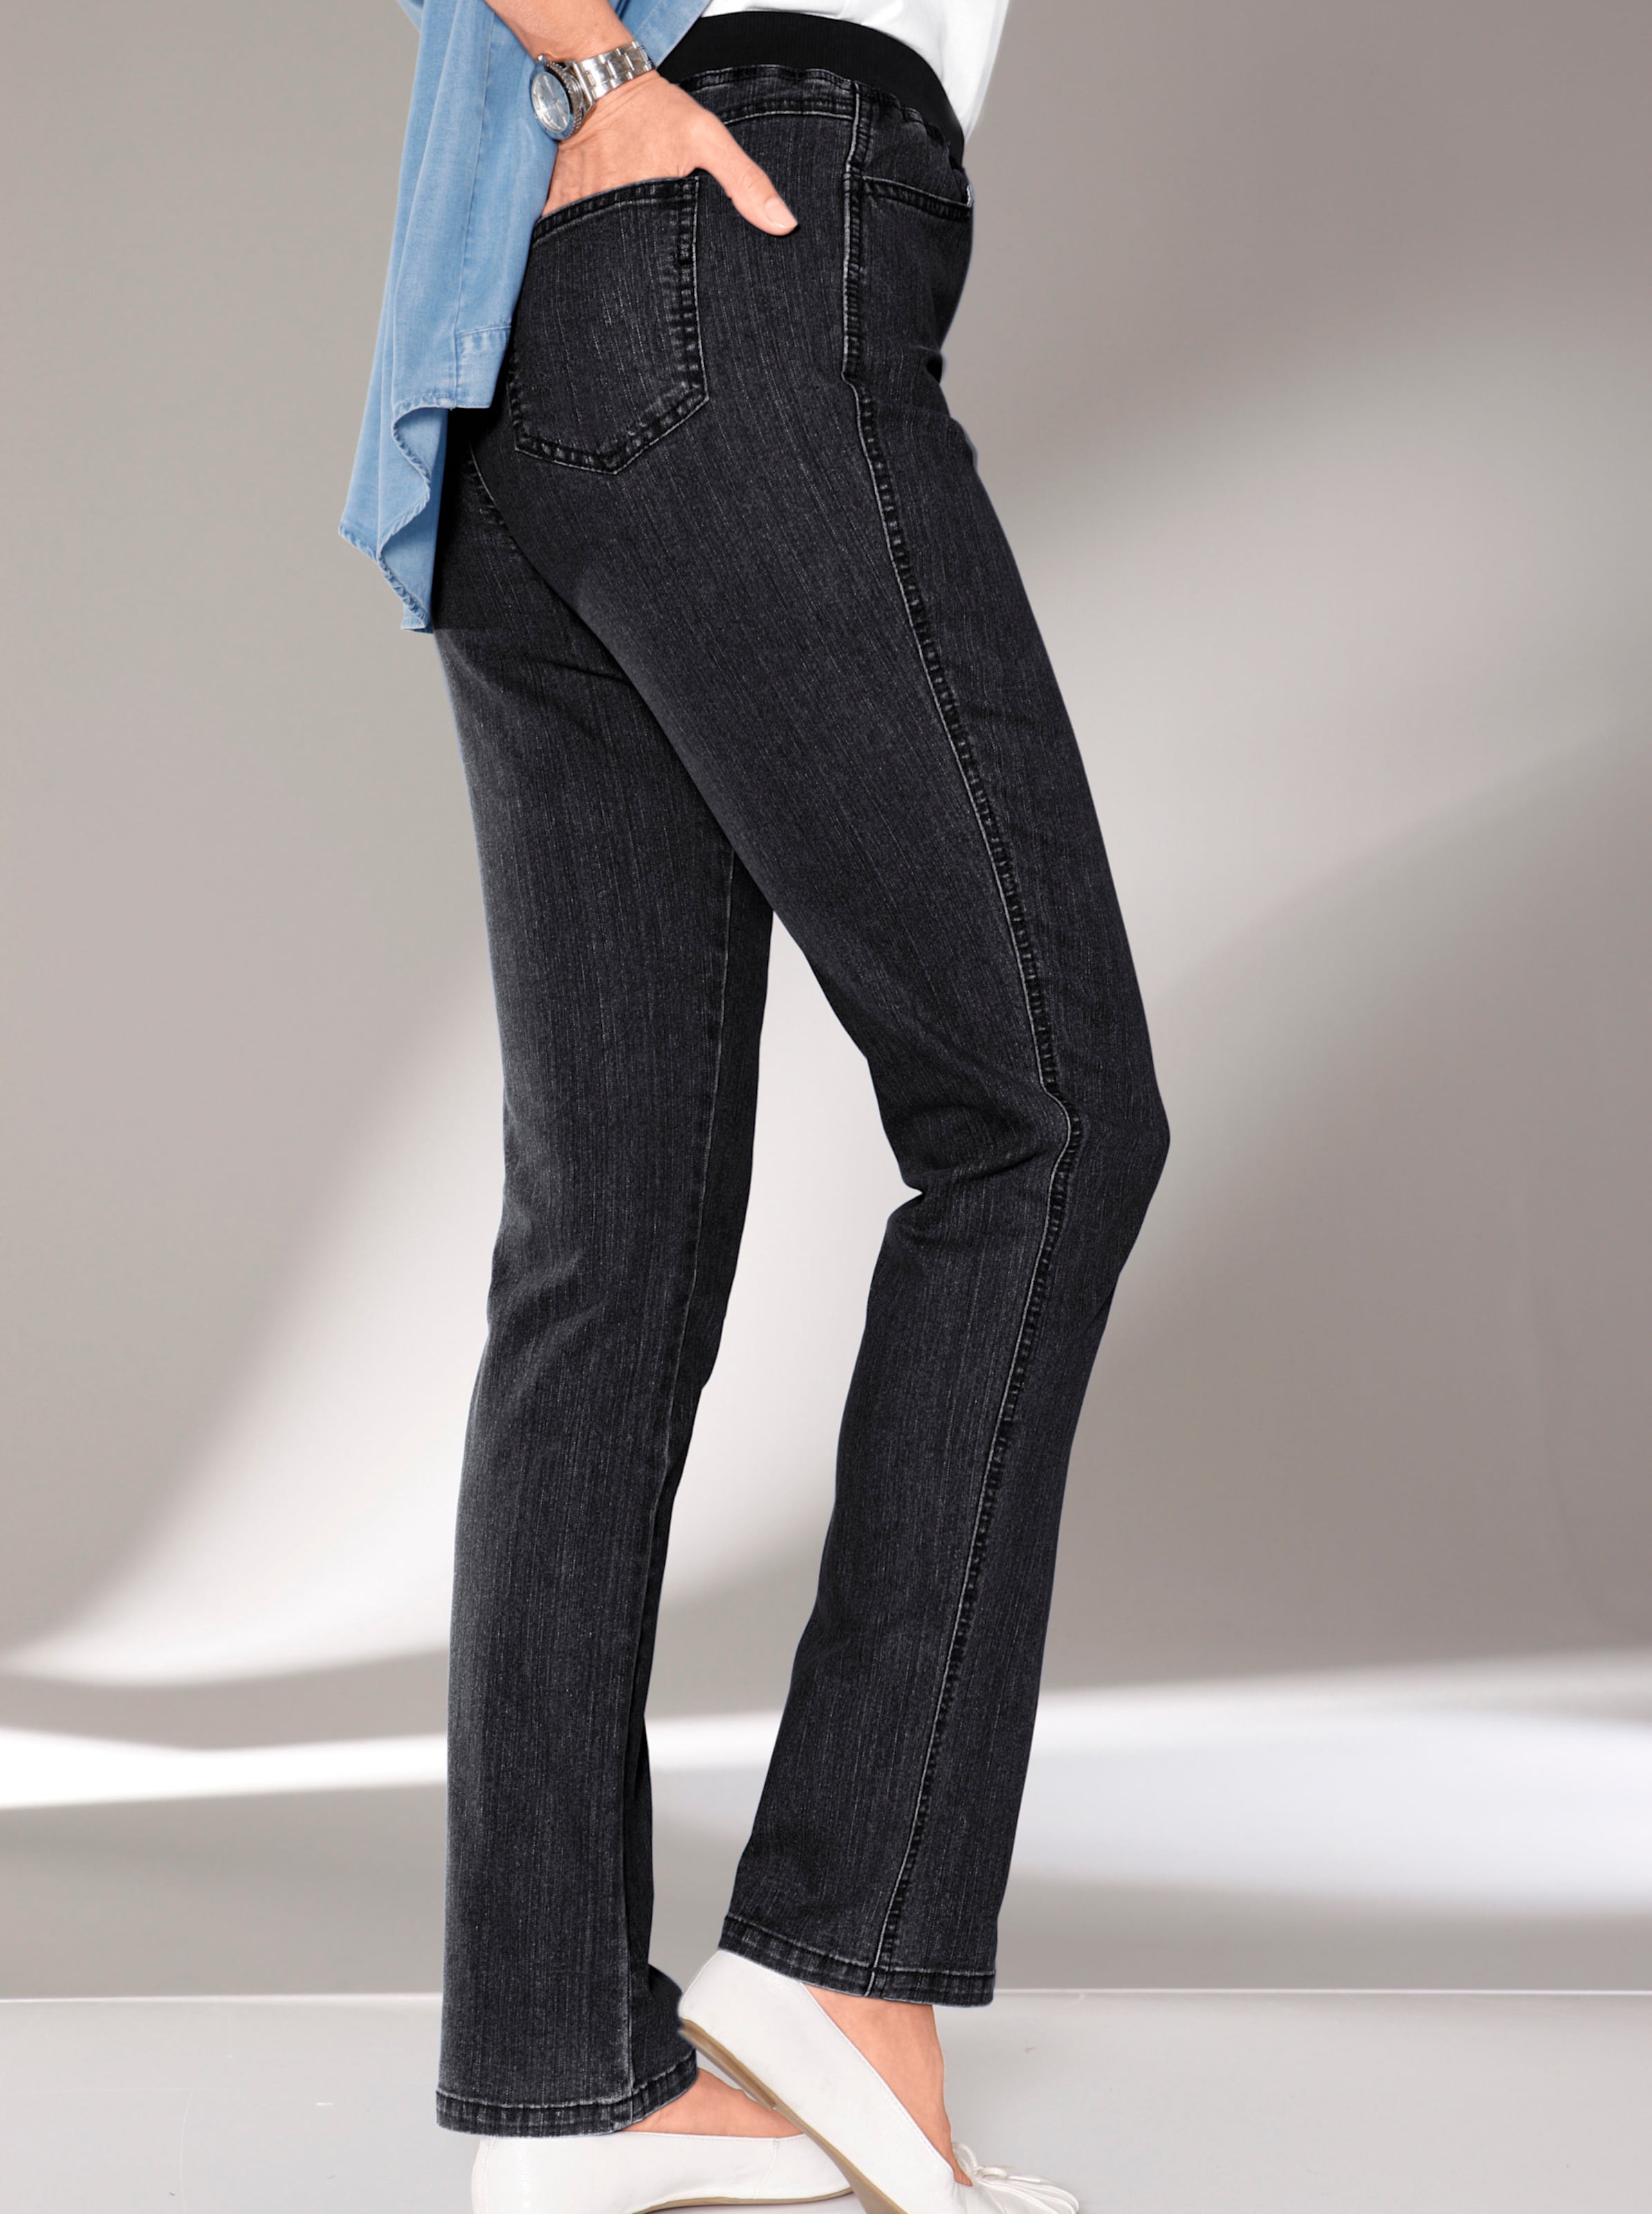 Jeans günstig Kaufen-Stretch-Jeans in black-denim von heine. Stretch-Jeans in black-denim von heine <![CDATA[Tragekomfort garantiert: In dieser Jeans werden Sie sich bei allem was Sie vorhaben rundum wohlfühlen! Möglich machen das die weiche Stretch-Qualität und der supers